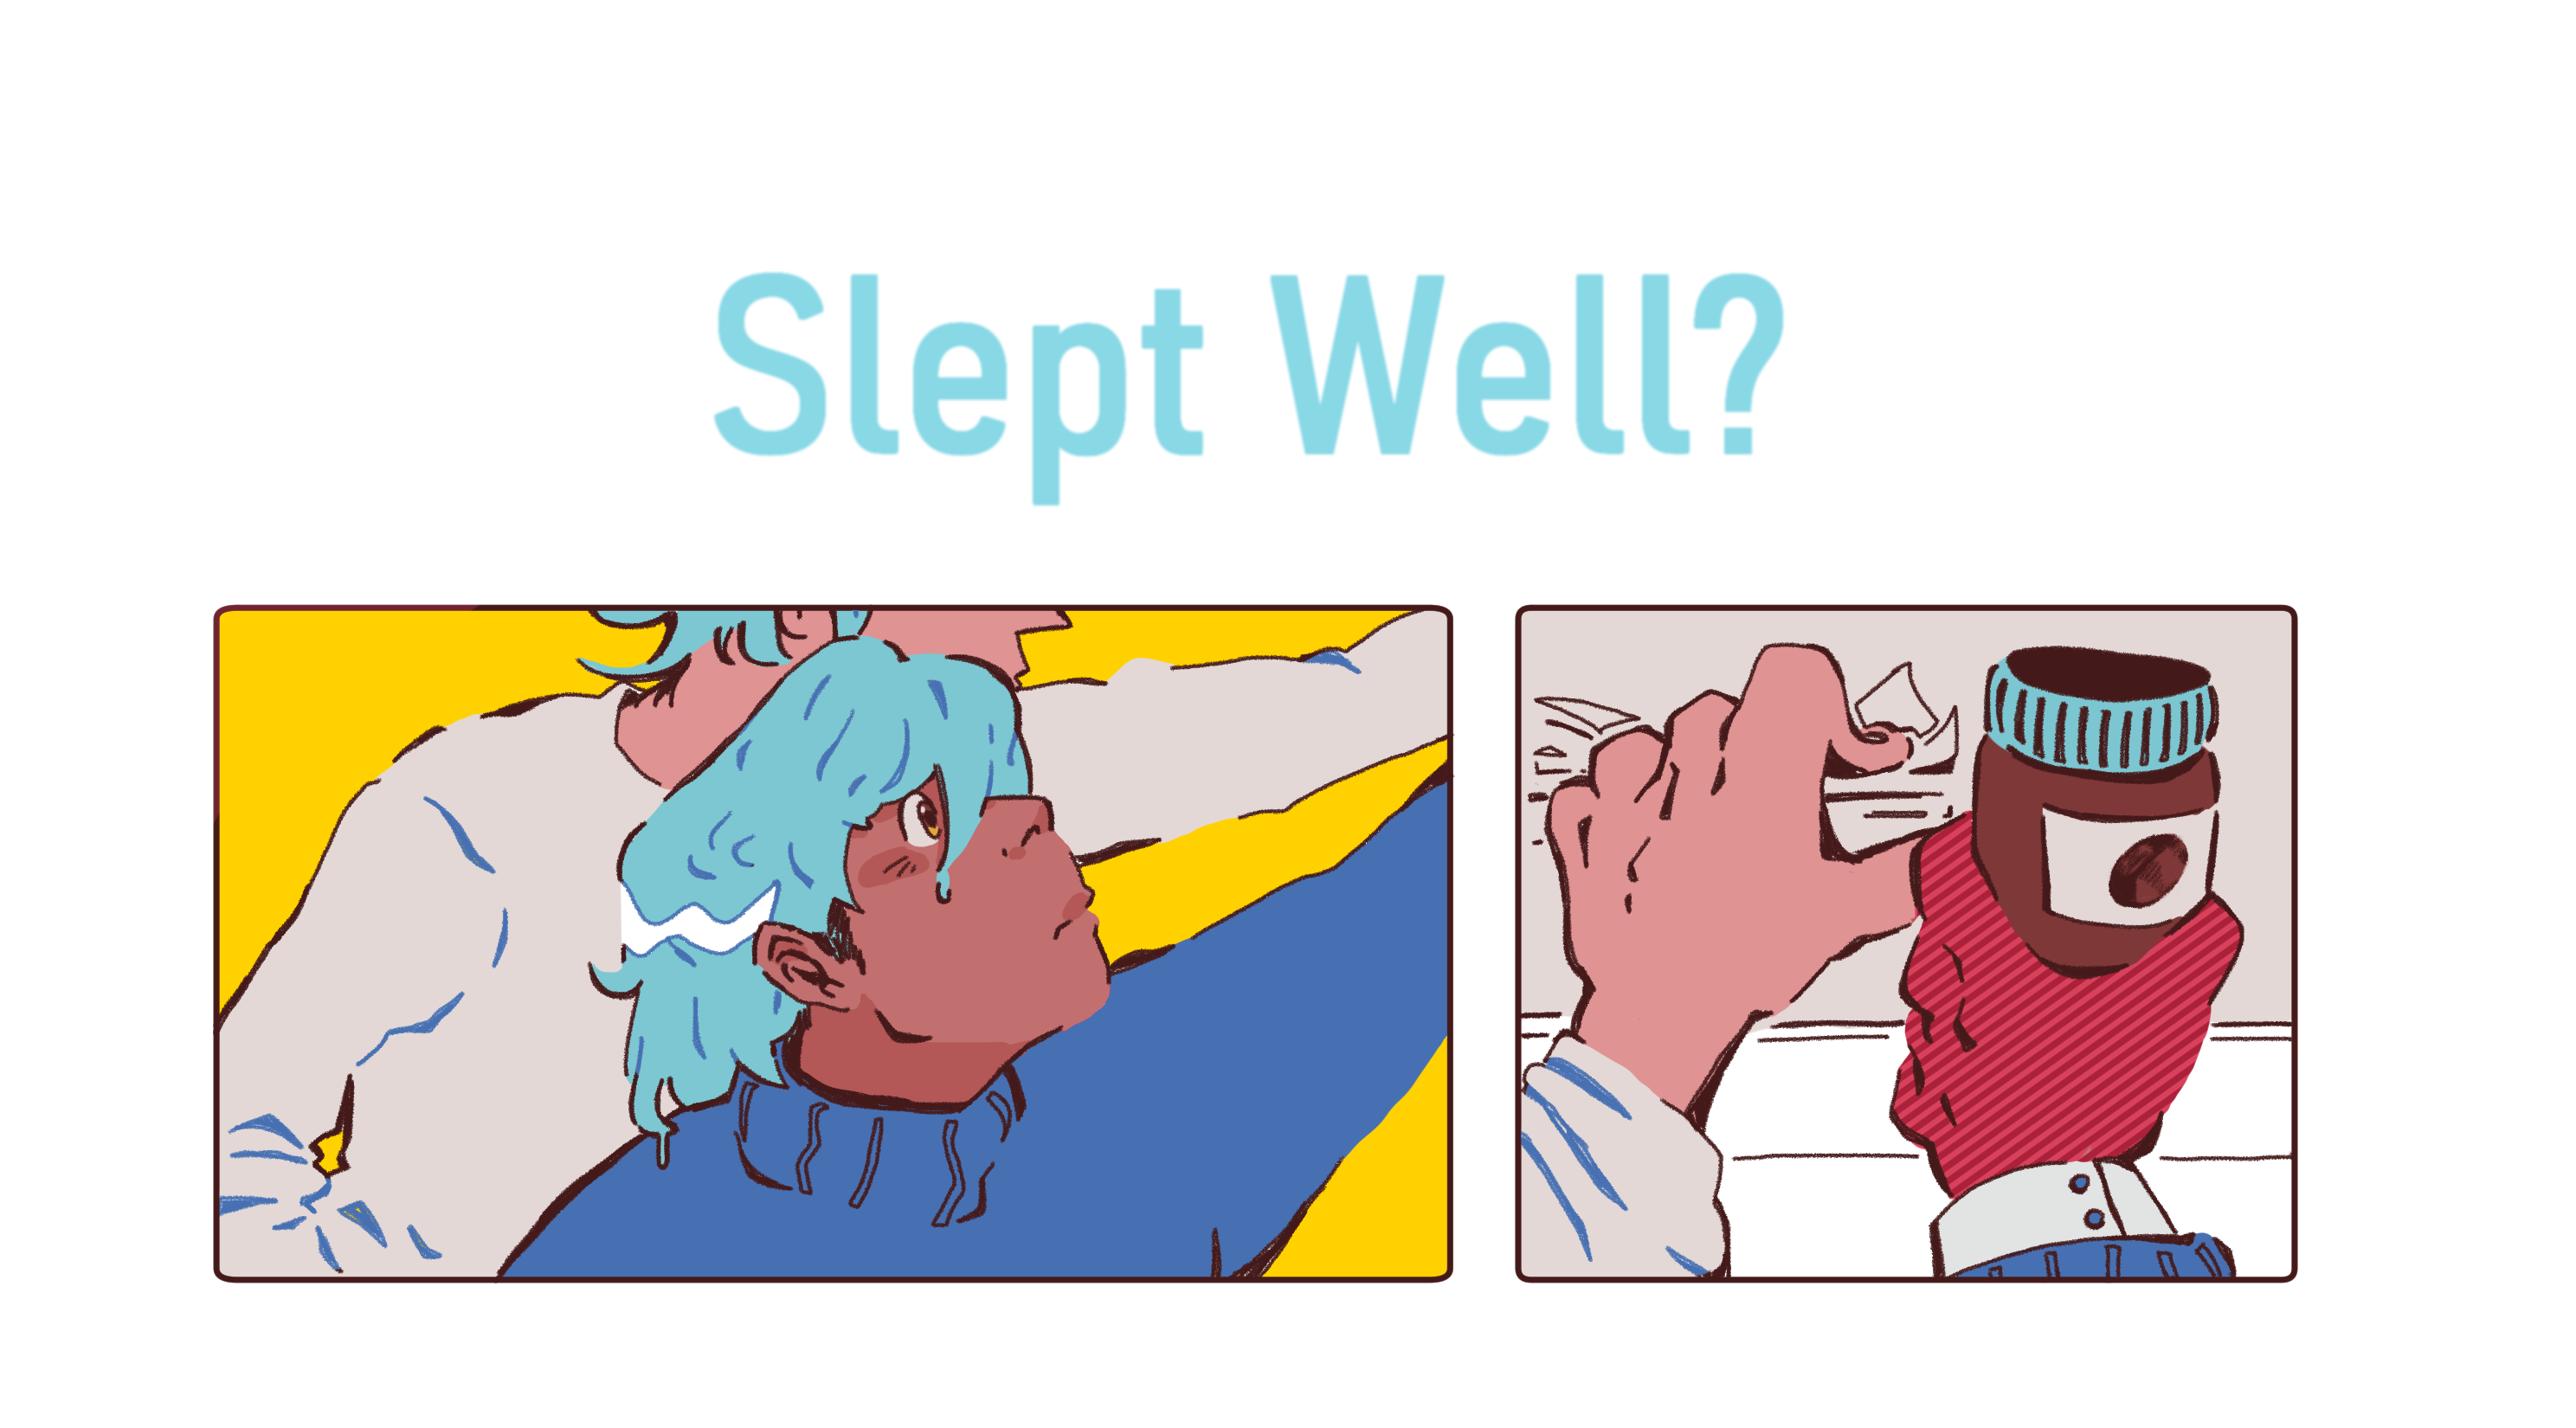 Slept well?